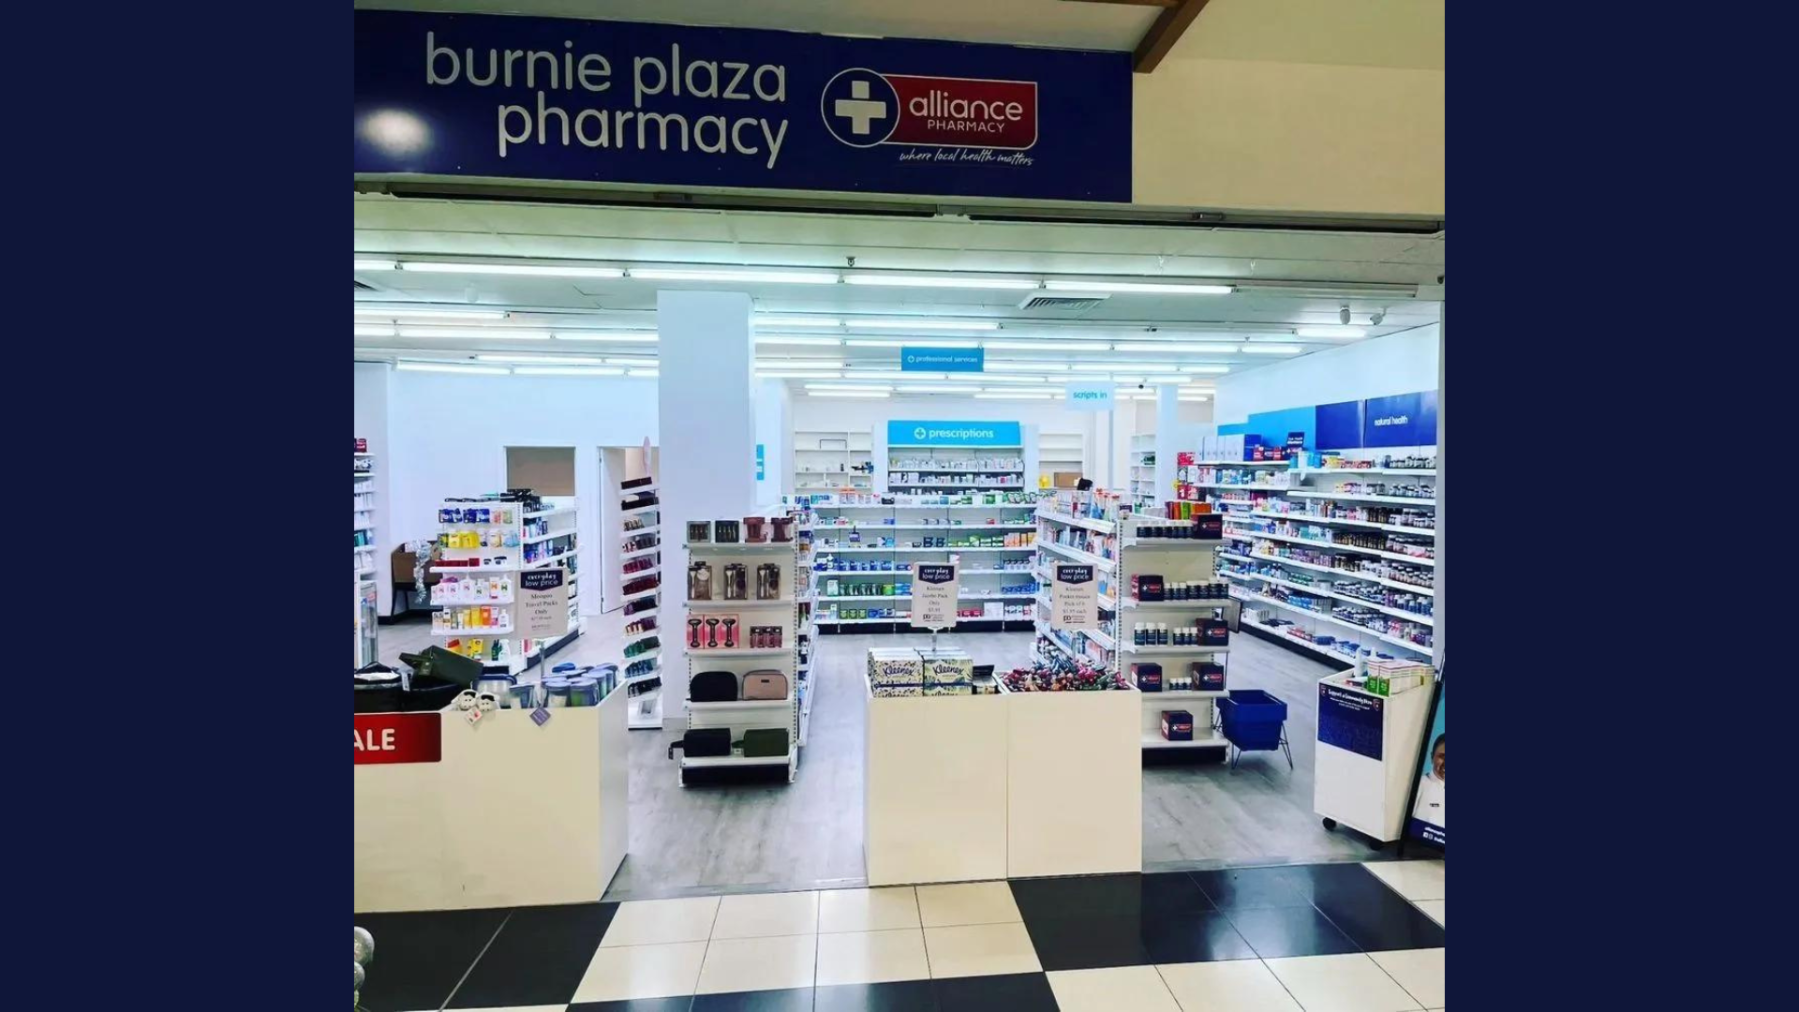 Burnie Plaza Pharmacy